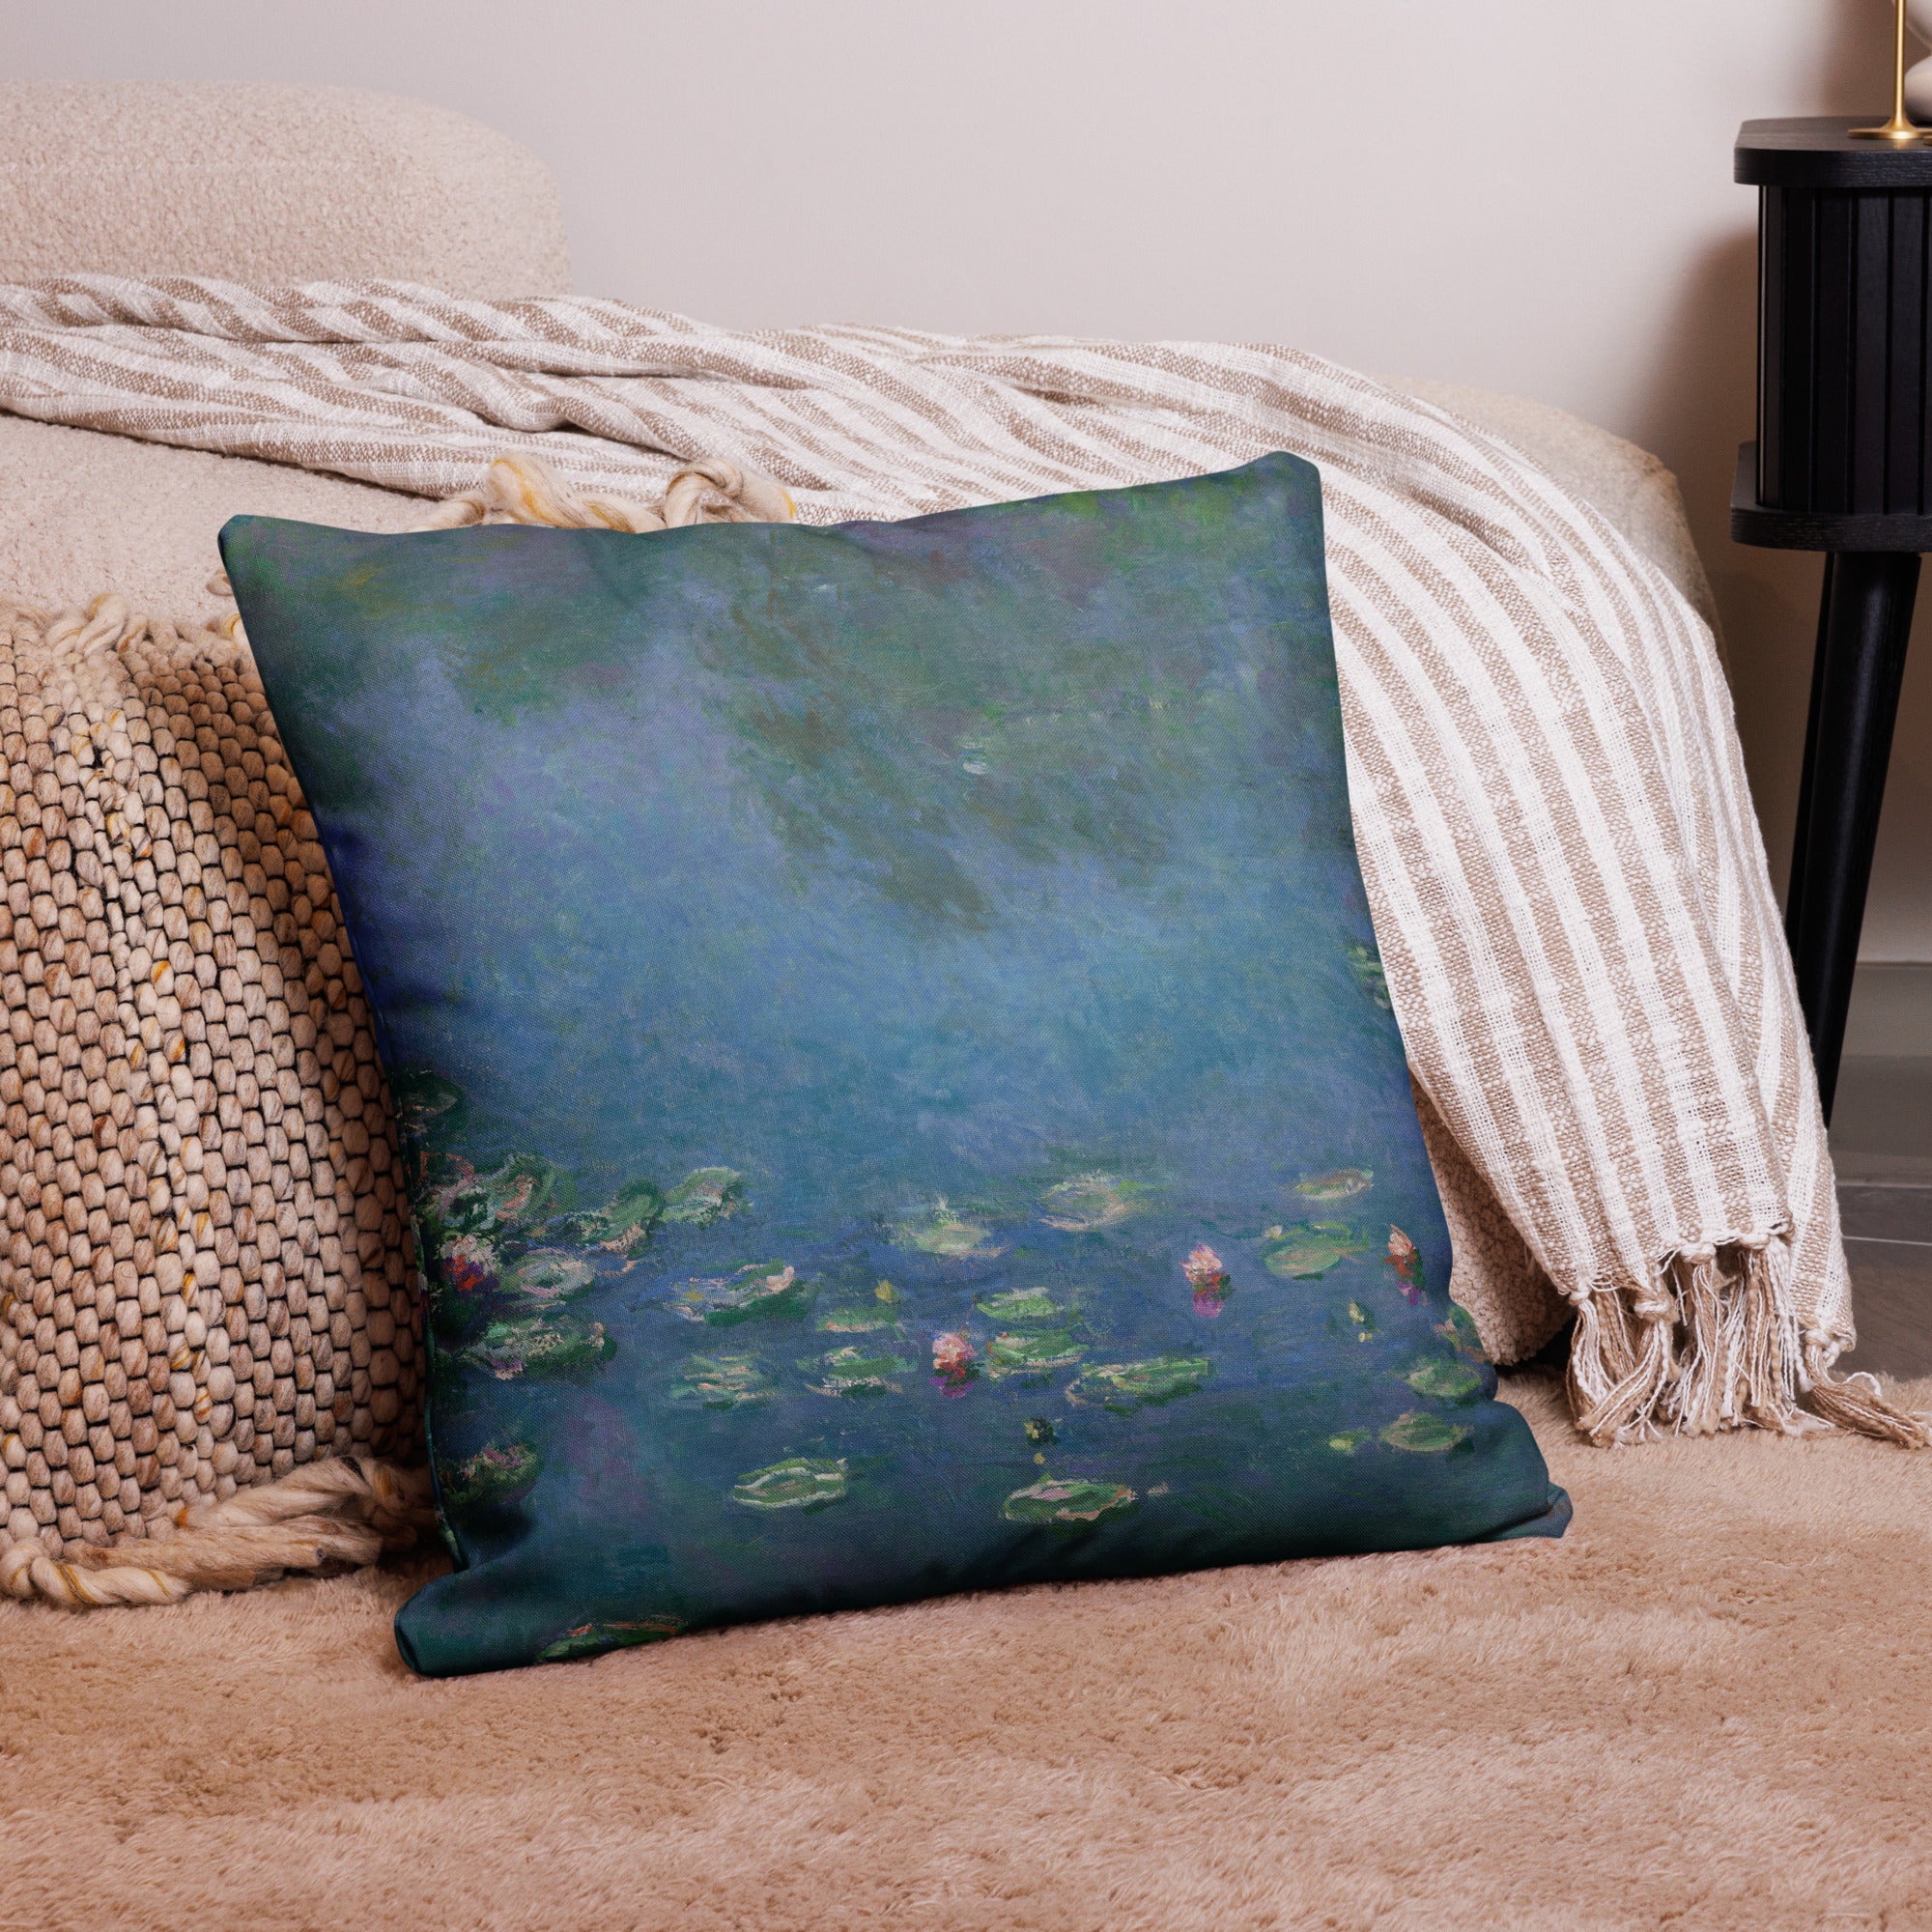 Claude Monet 'Water Lilies' Famous Painting Premium Pillow | Premium Art Cushion